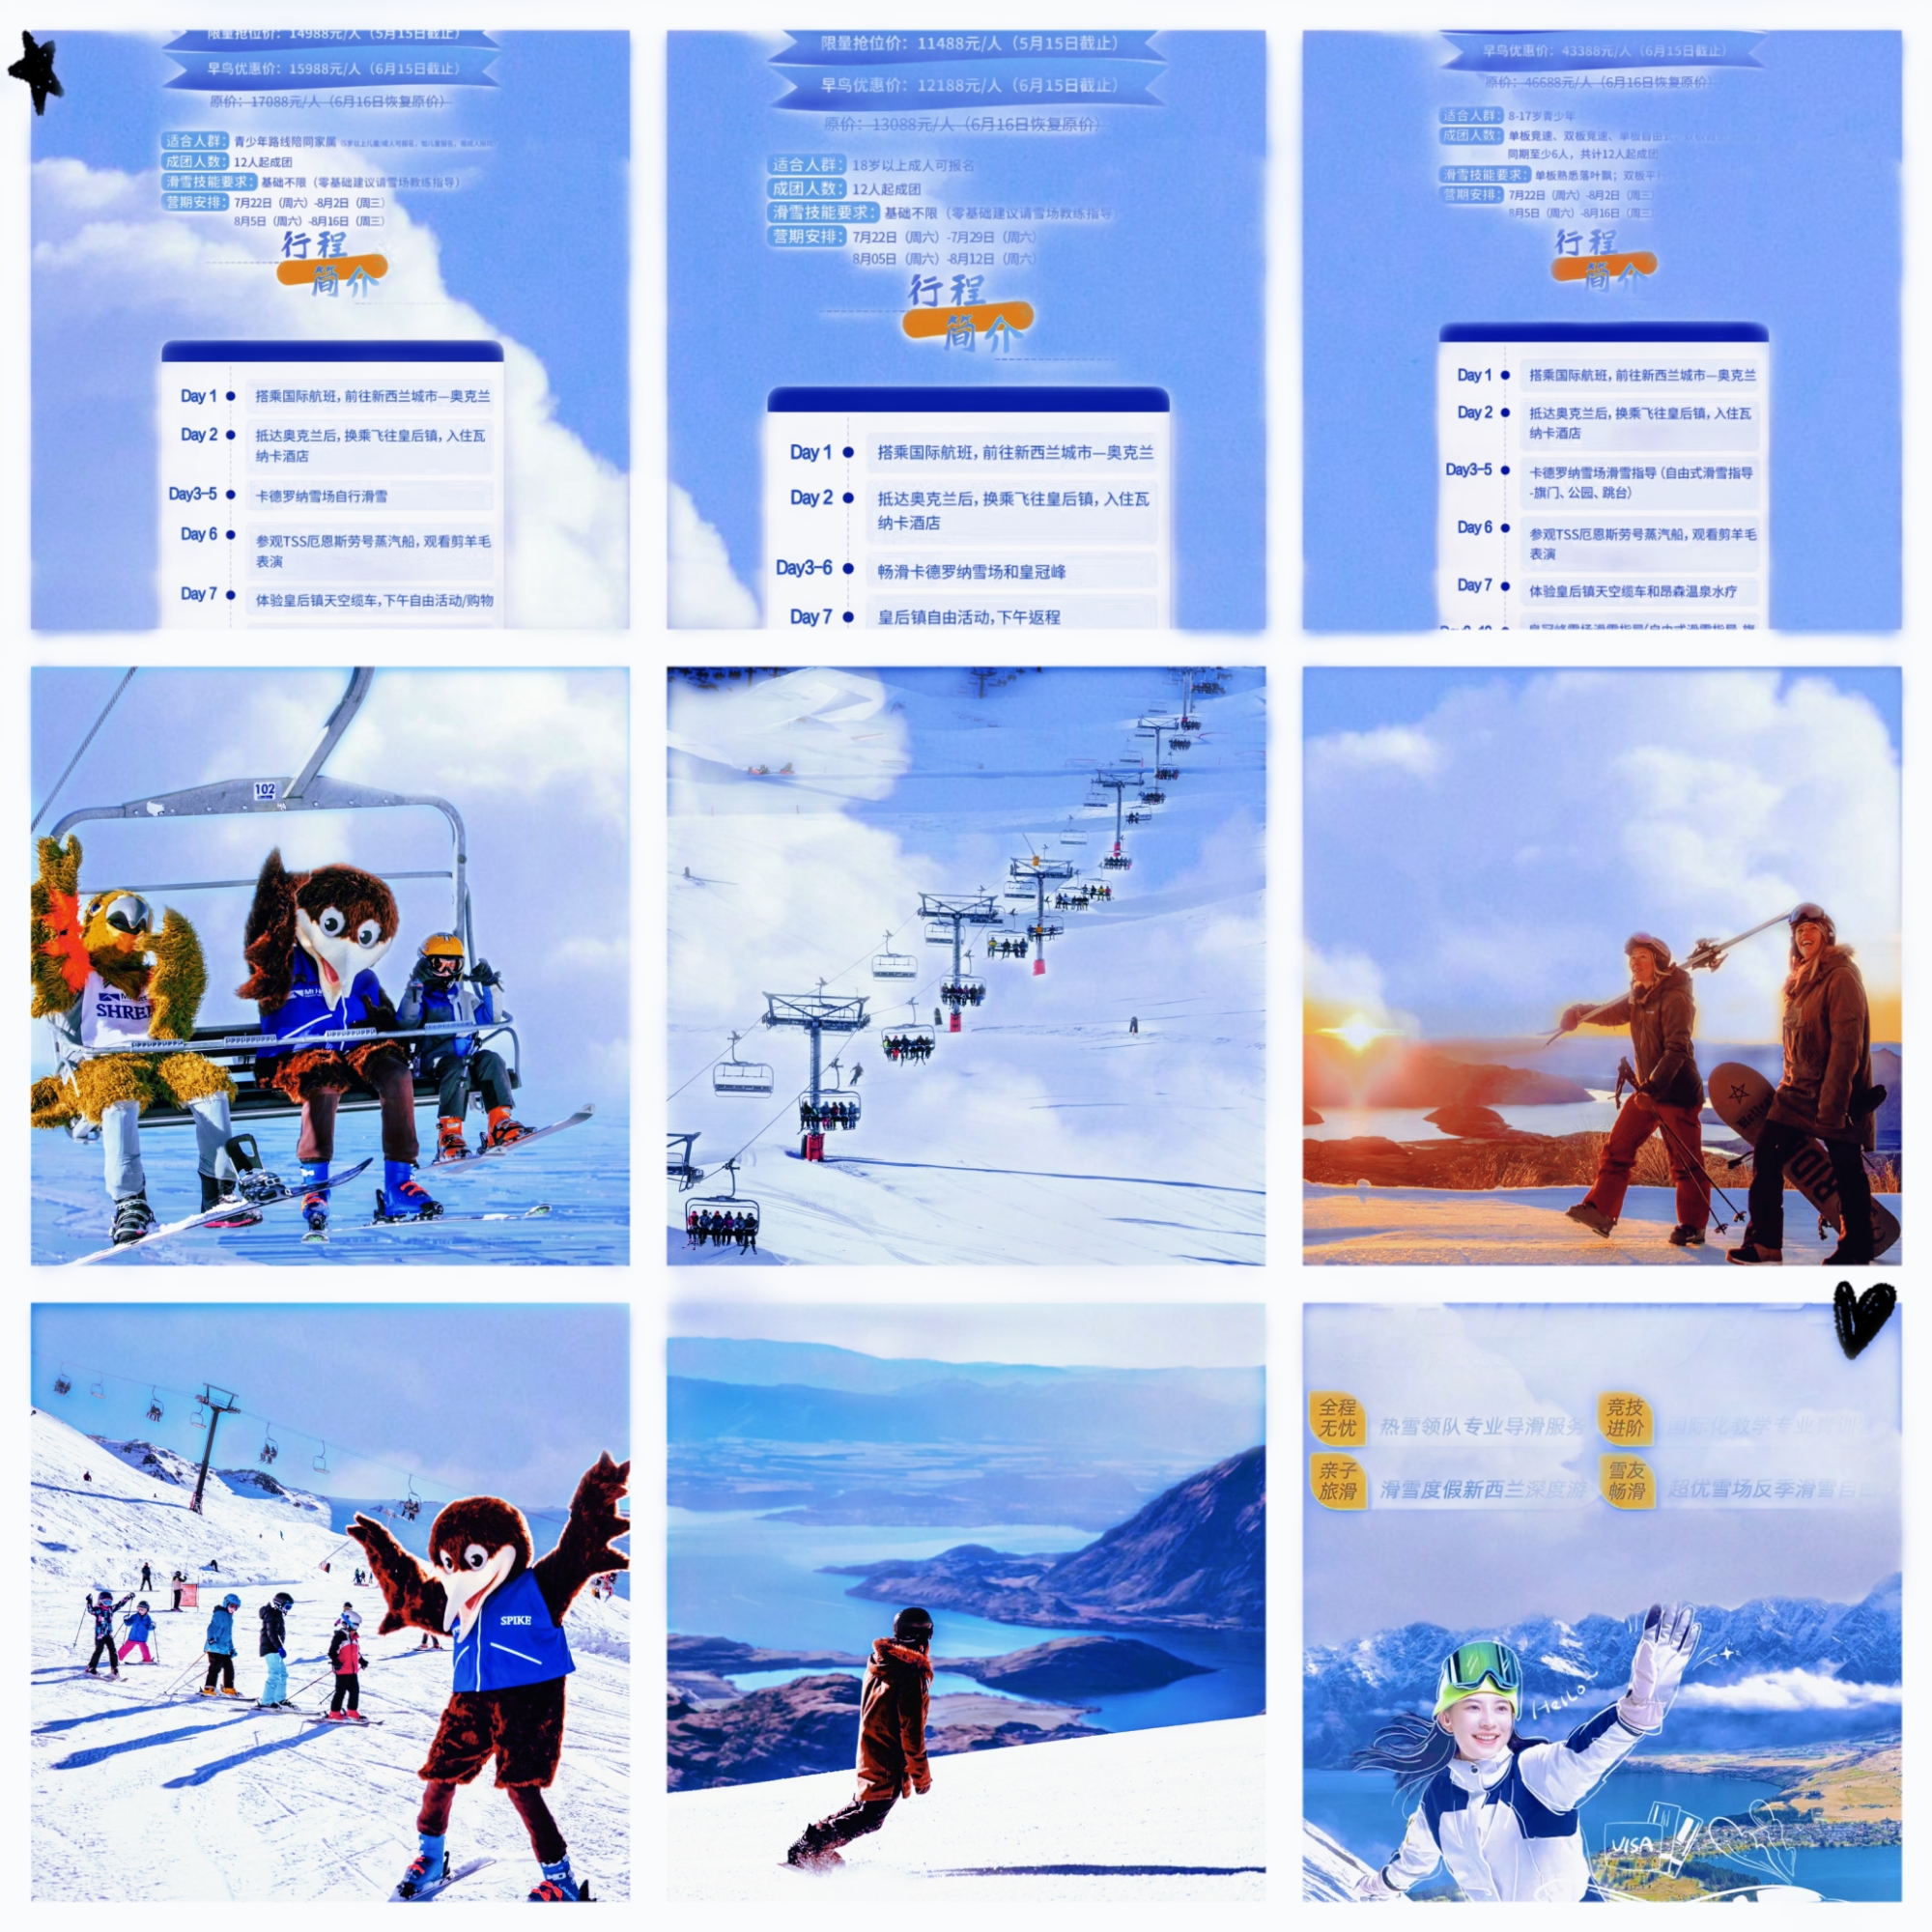 全球 反季节 玩雪 滑雪 赏雪 旅游攻略